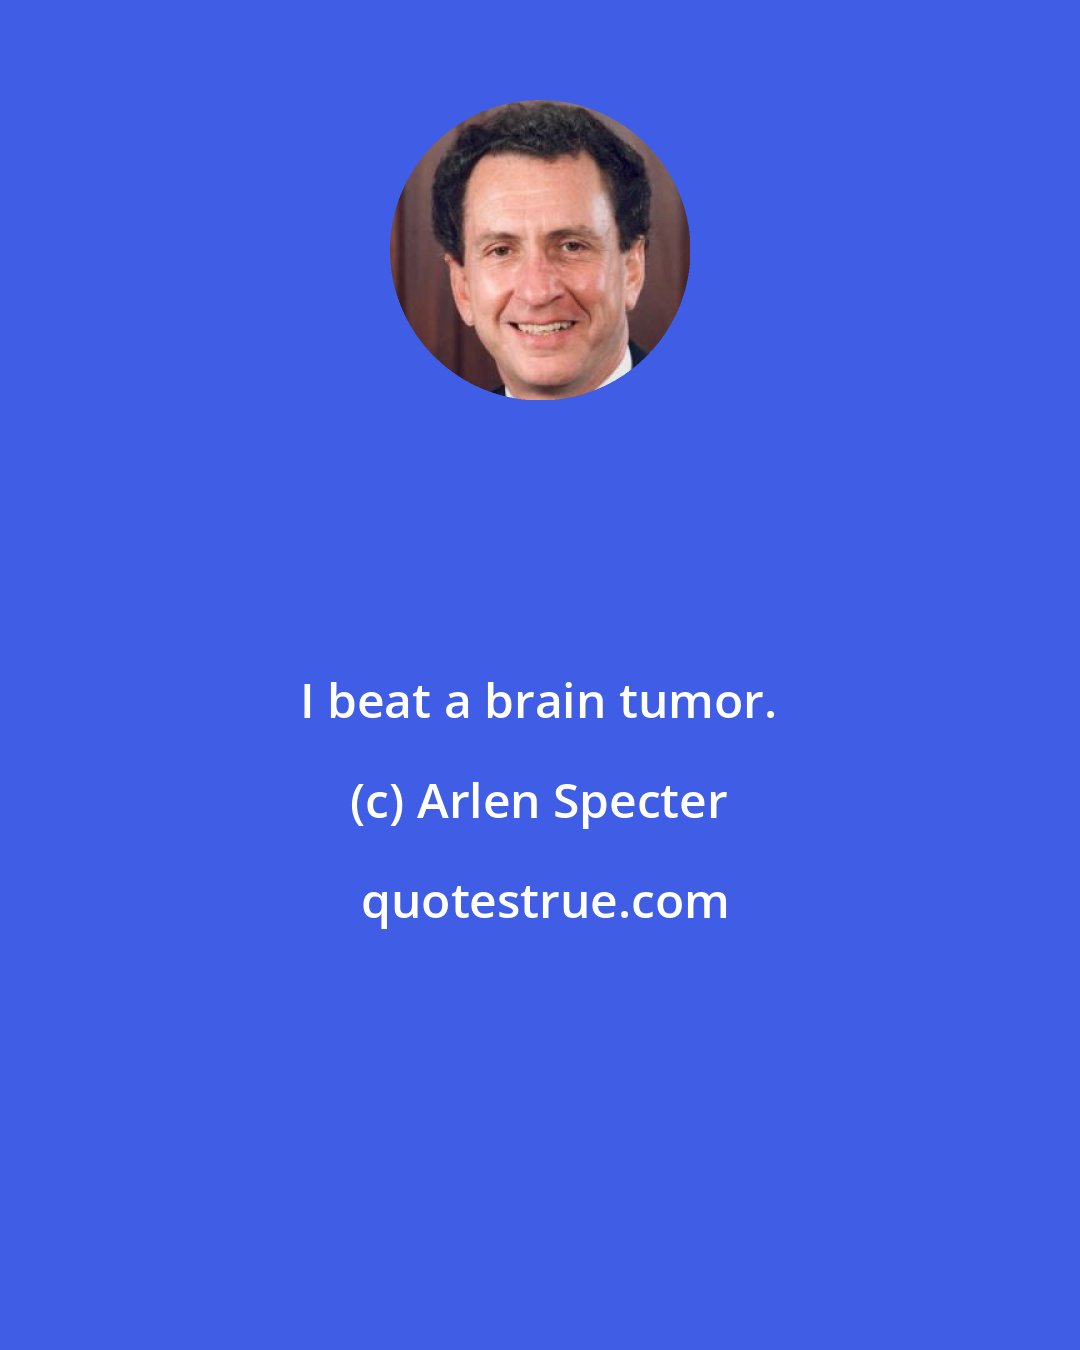 Arlen Specter: I beat a brain tumor.